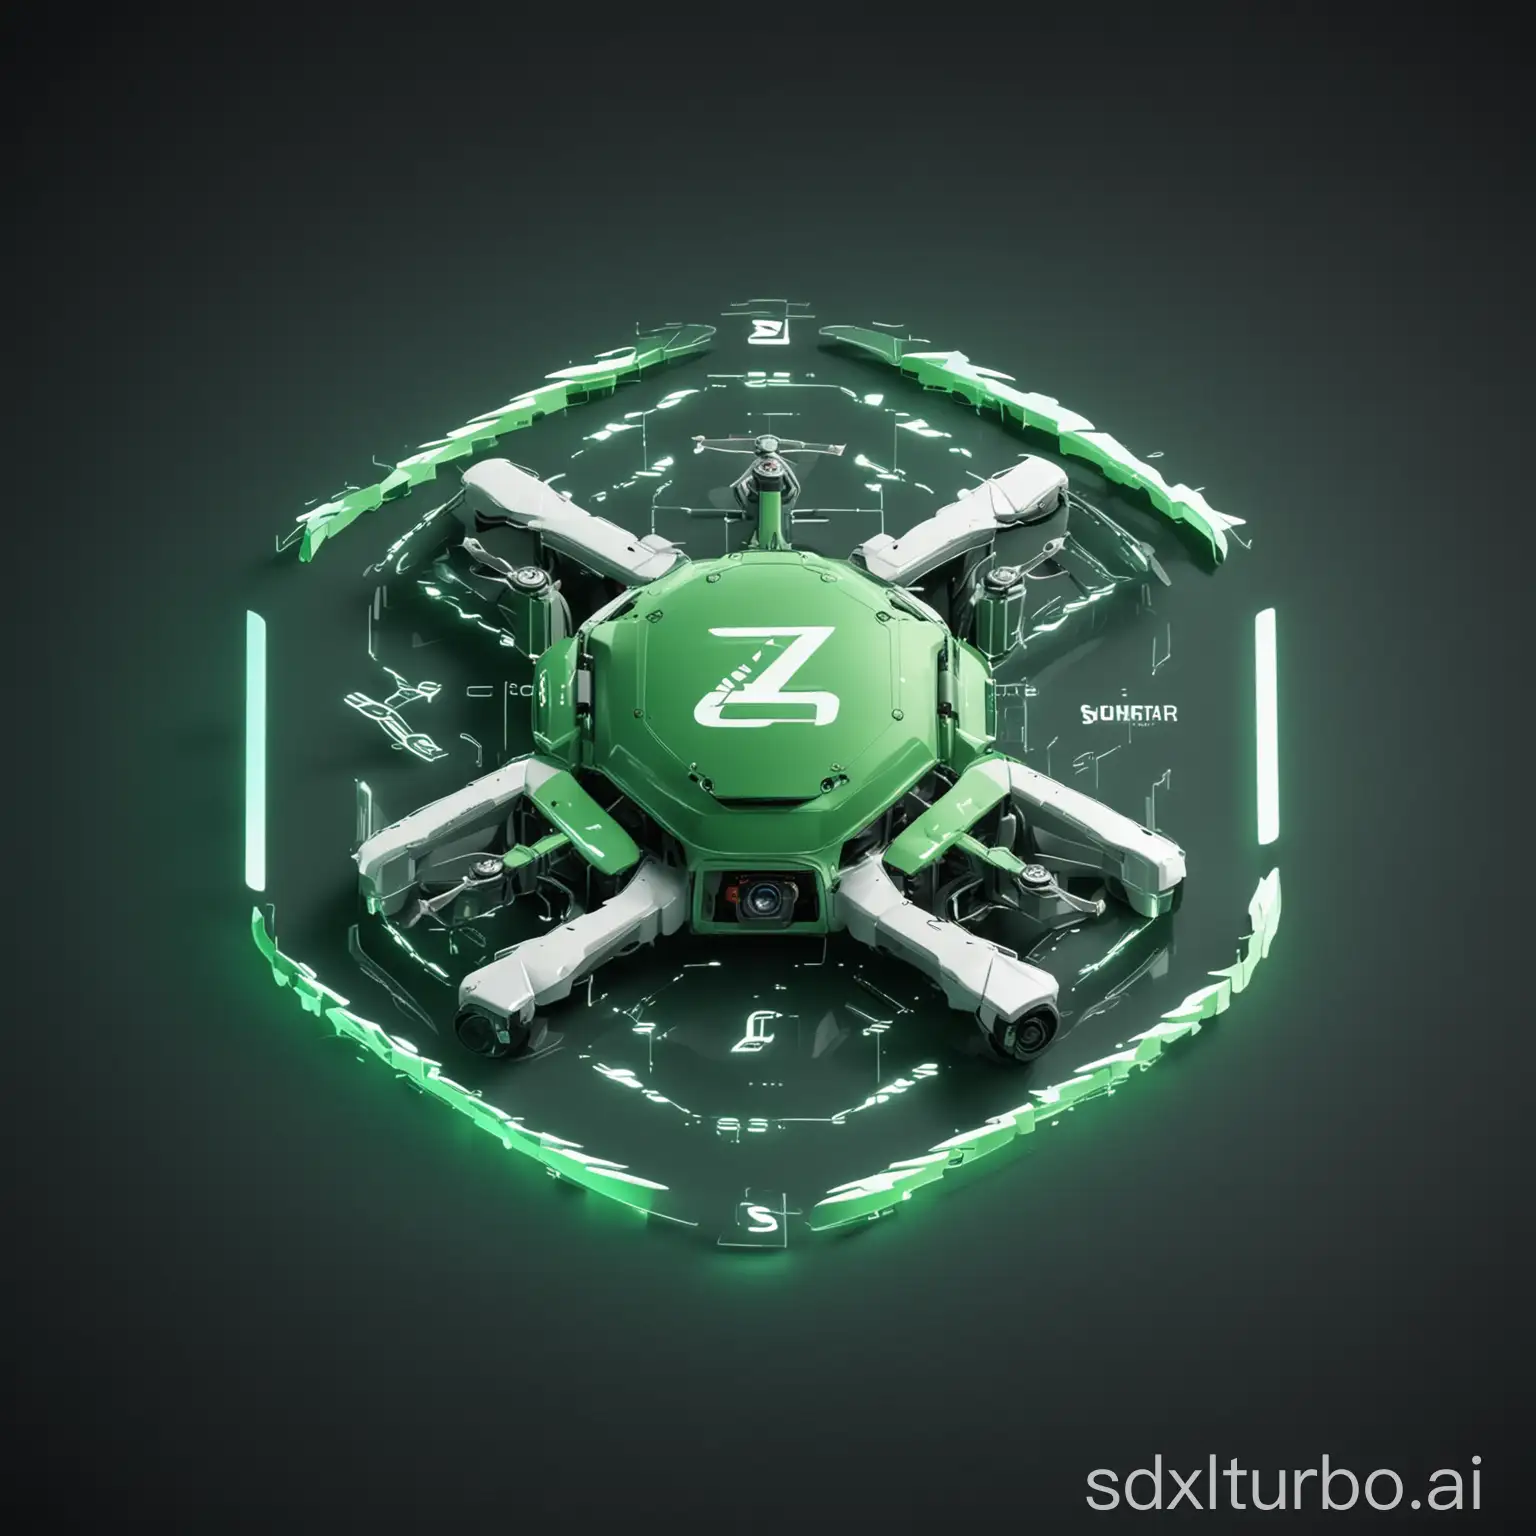 智梭无人车logo图片  融合字母ZS 底色为绿色  字母白色 发光  科技元素
